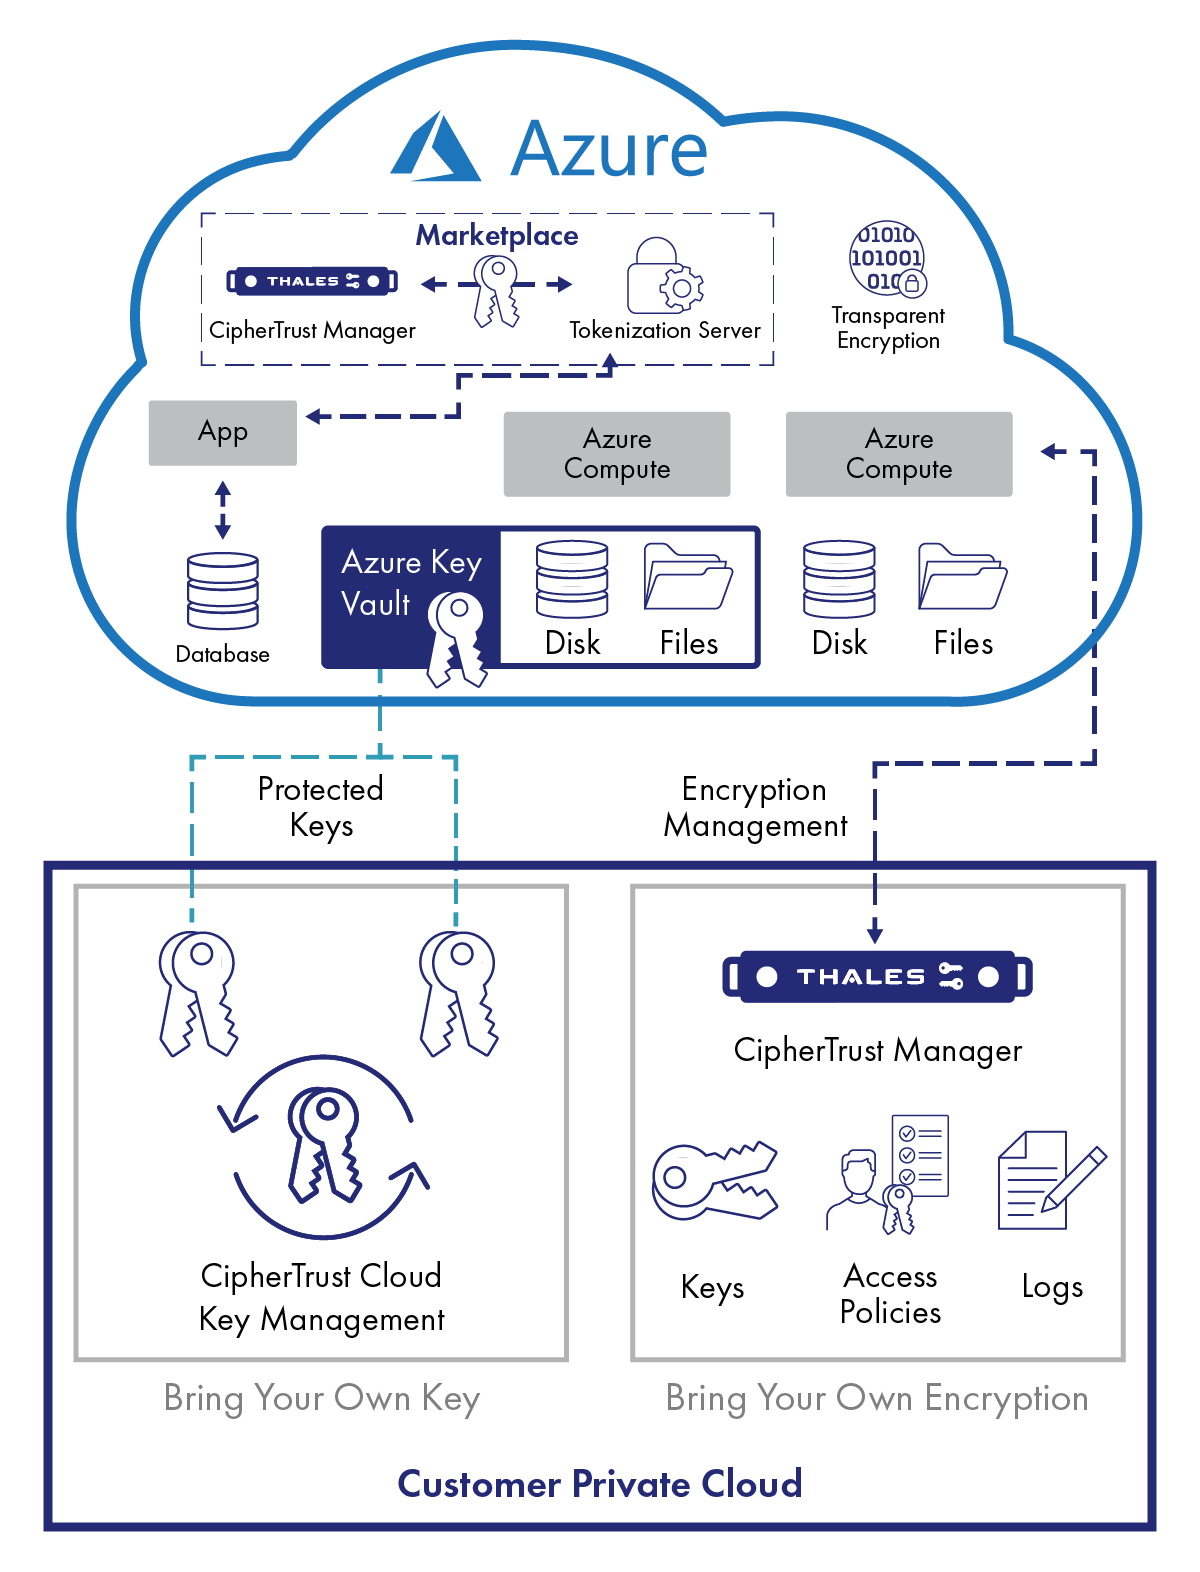 Cloud privato di Microsoft Azure - Diagramma della gestione delle chiavi crittografiche